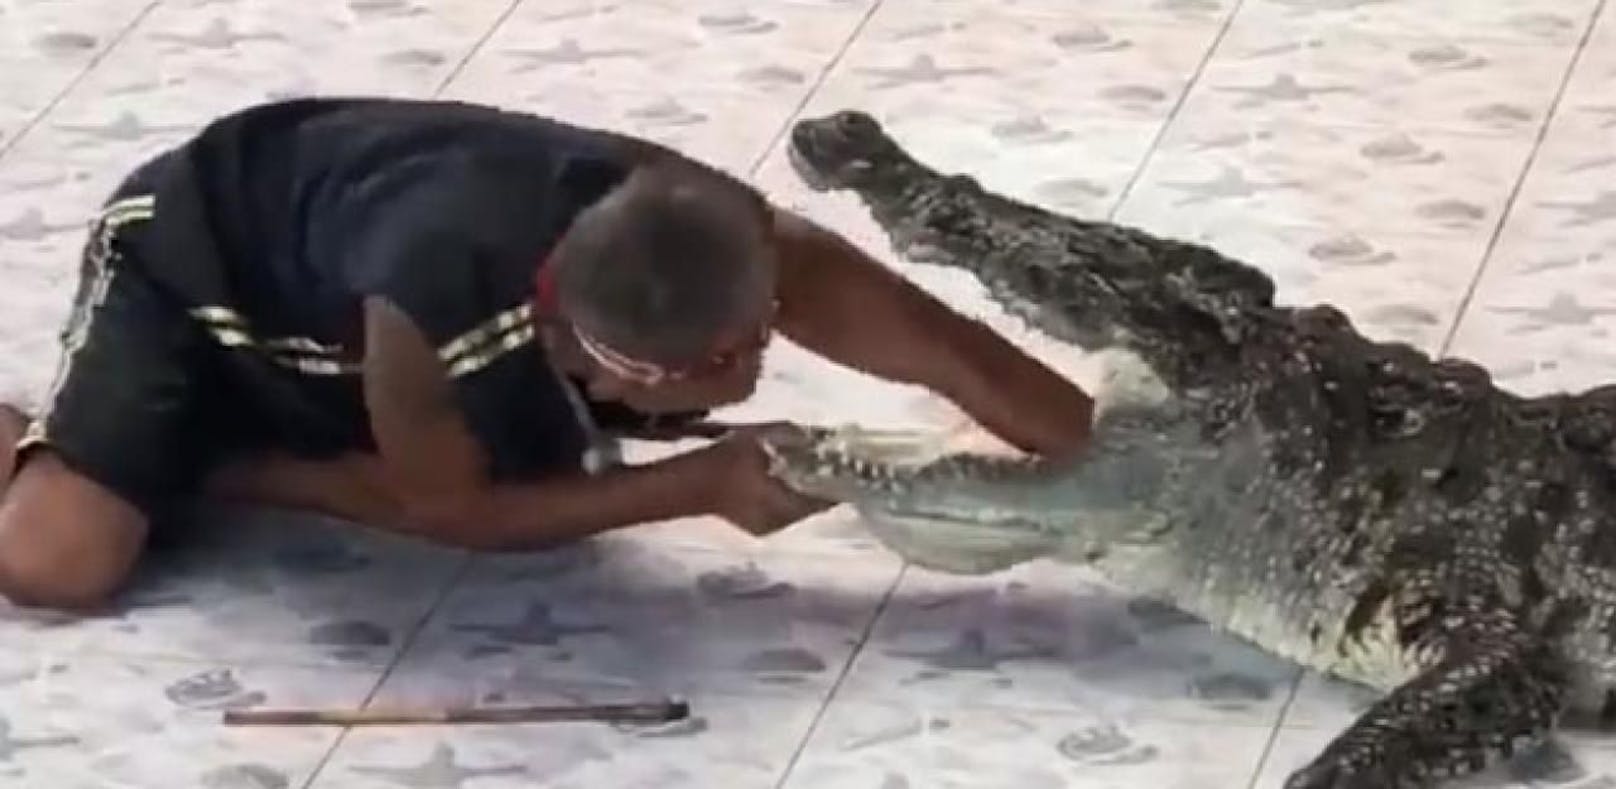 Der Trainer streckt seinen Arm in den Mund des Krokodils, wenig später schnappt es zu